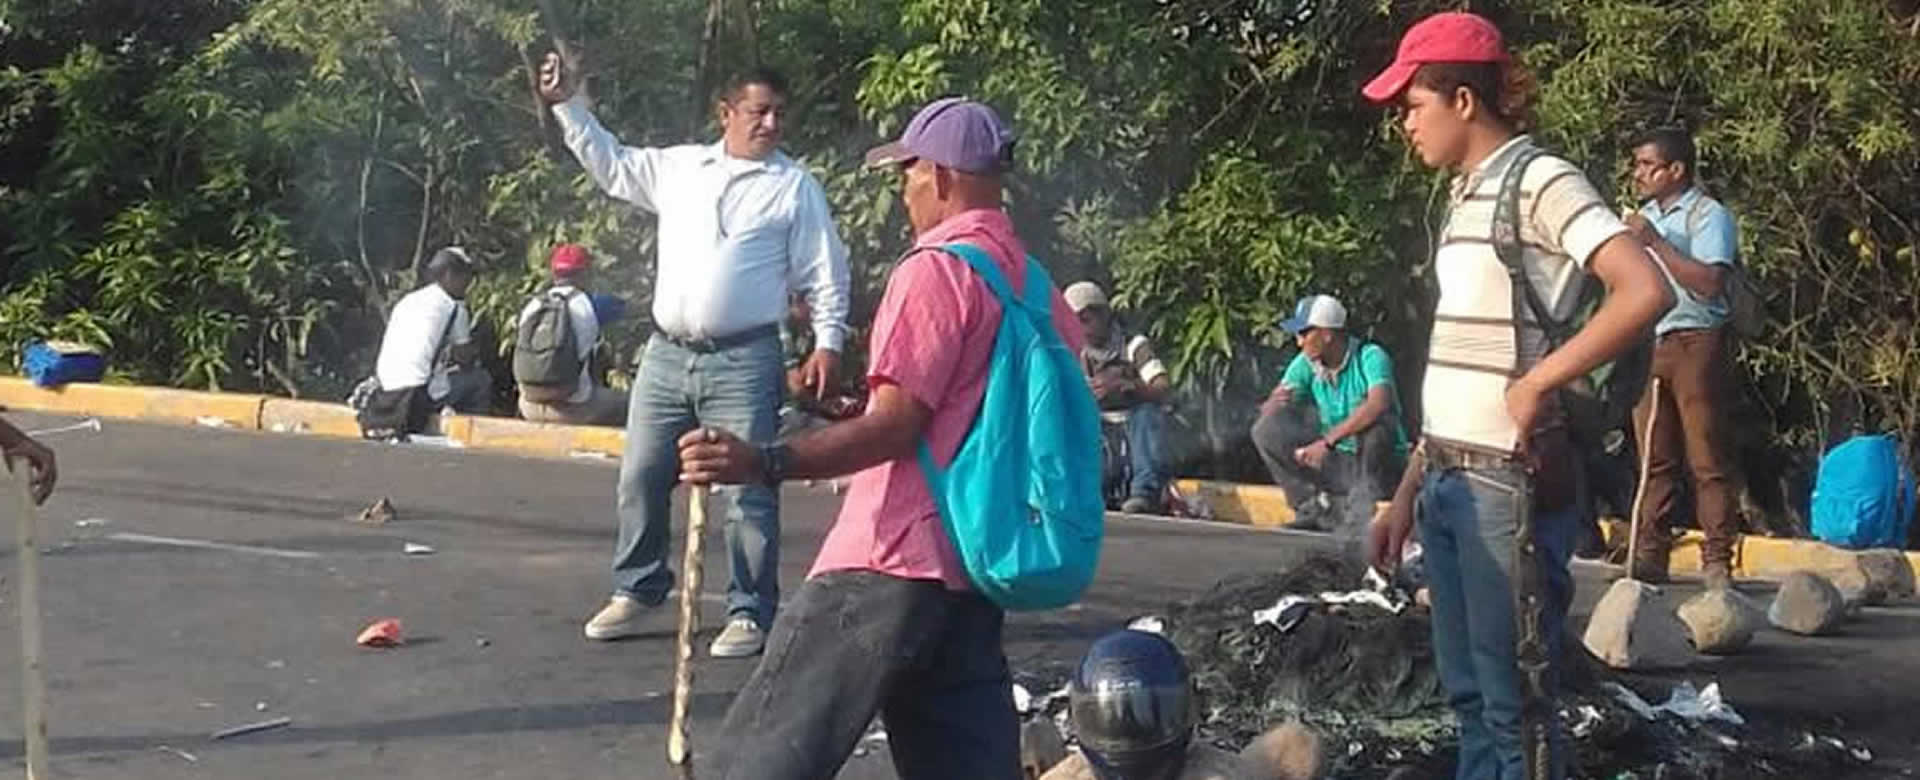 Grupo de supuestos manifestantes pacíficos realizan tranque en empalme de Lóvago, Acoyapa